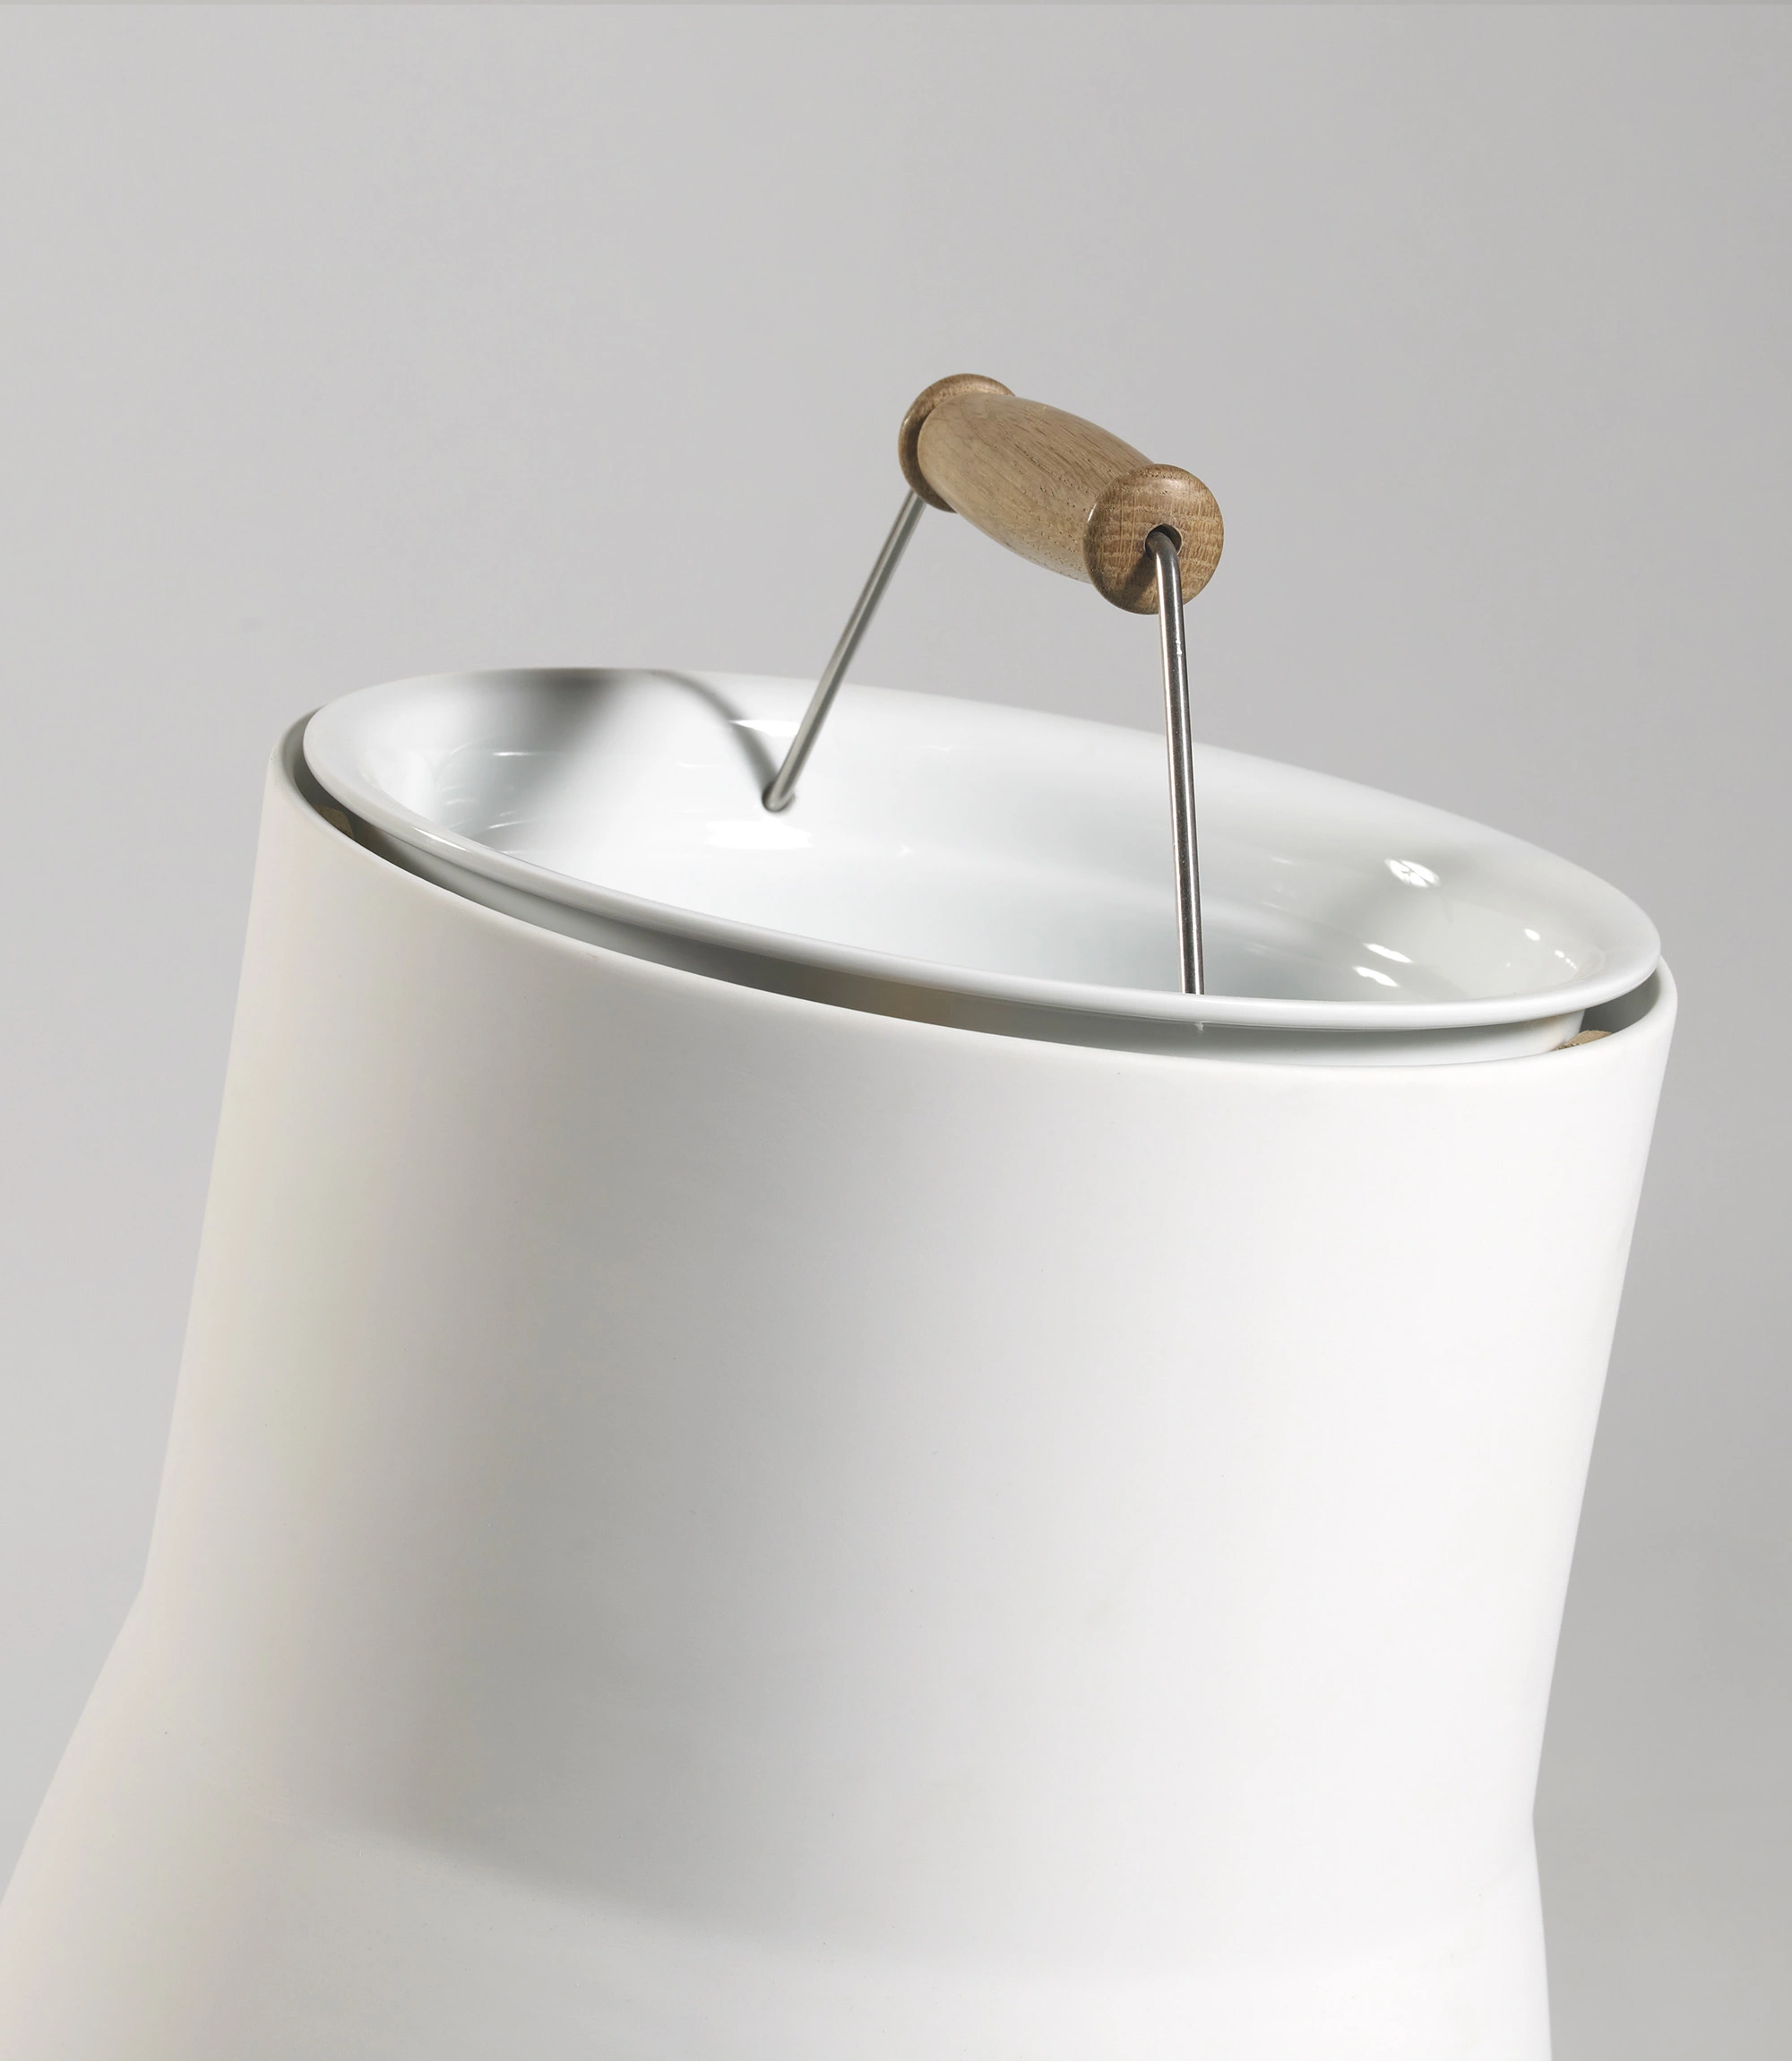 Snail Coffee Table - Hella Jongerius - Coffee table - Galerie kreo